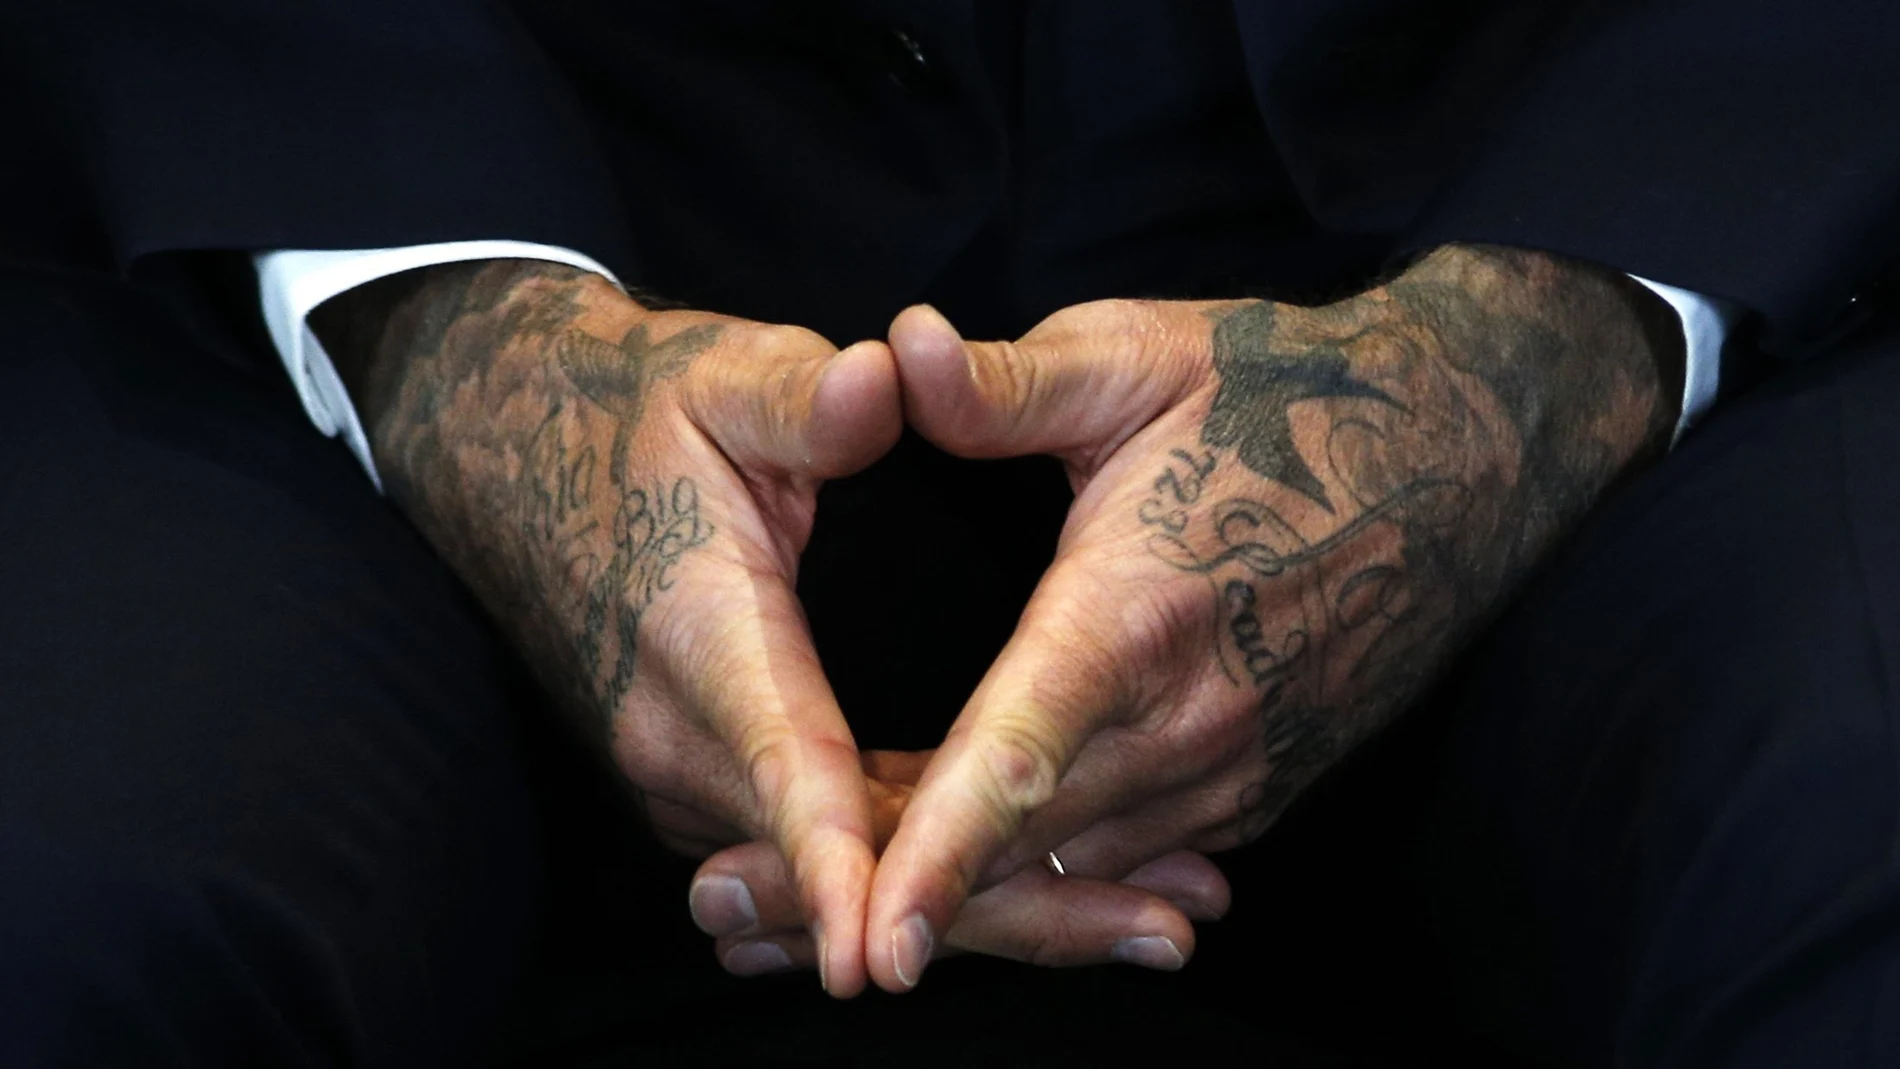 El tatuaje, antes un distintivo de presidiarios y criminales, marca hoy la identidad de millones de jóvenes y es un símbolo de prestigio